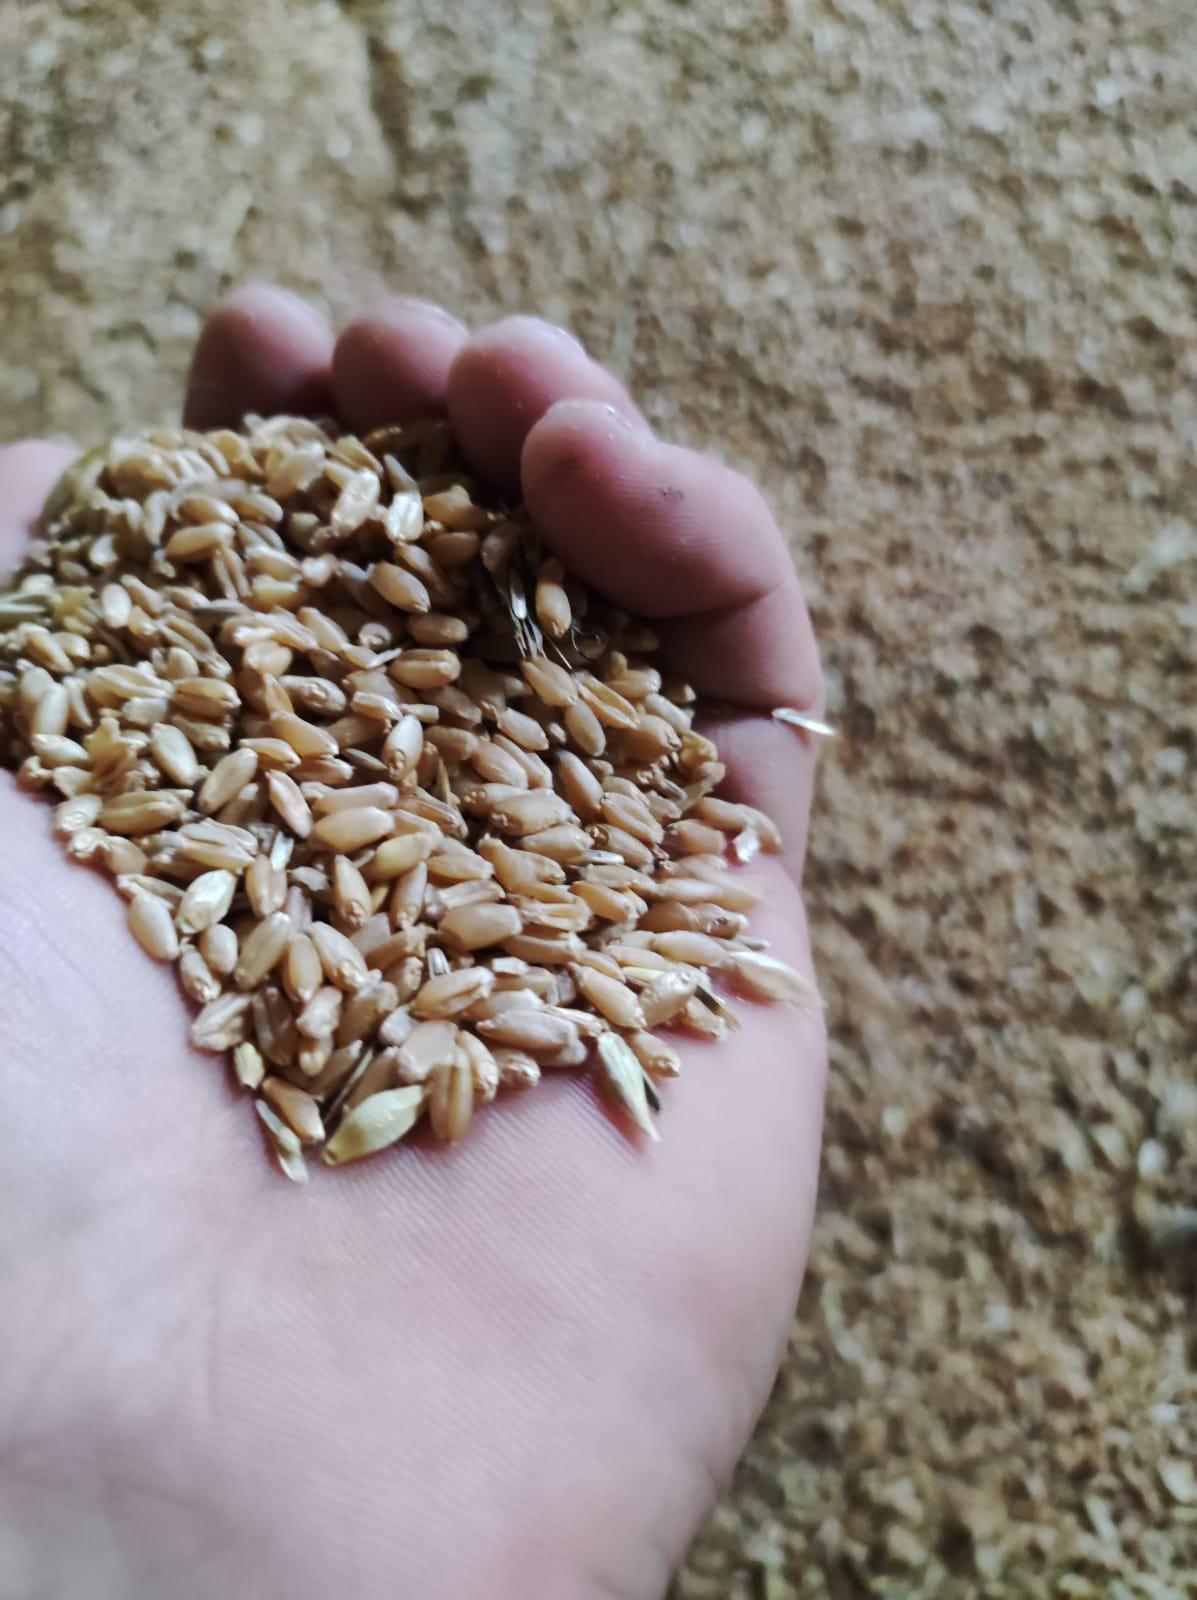 Buğday (Ekmeklik) tohumu - Enes Gün tarafından verilen satılık buğday (ekmeklik) tohumu ilanını ve diğer satılık buğday (ekmeklik) tohumu ilanlarını tarimziraat.com adresinde bulabilirsiniz